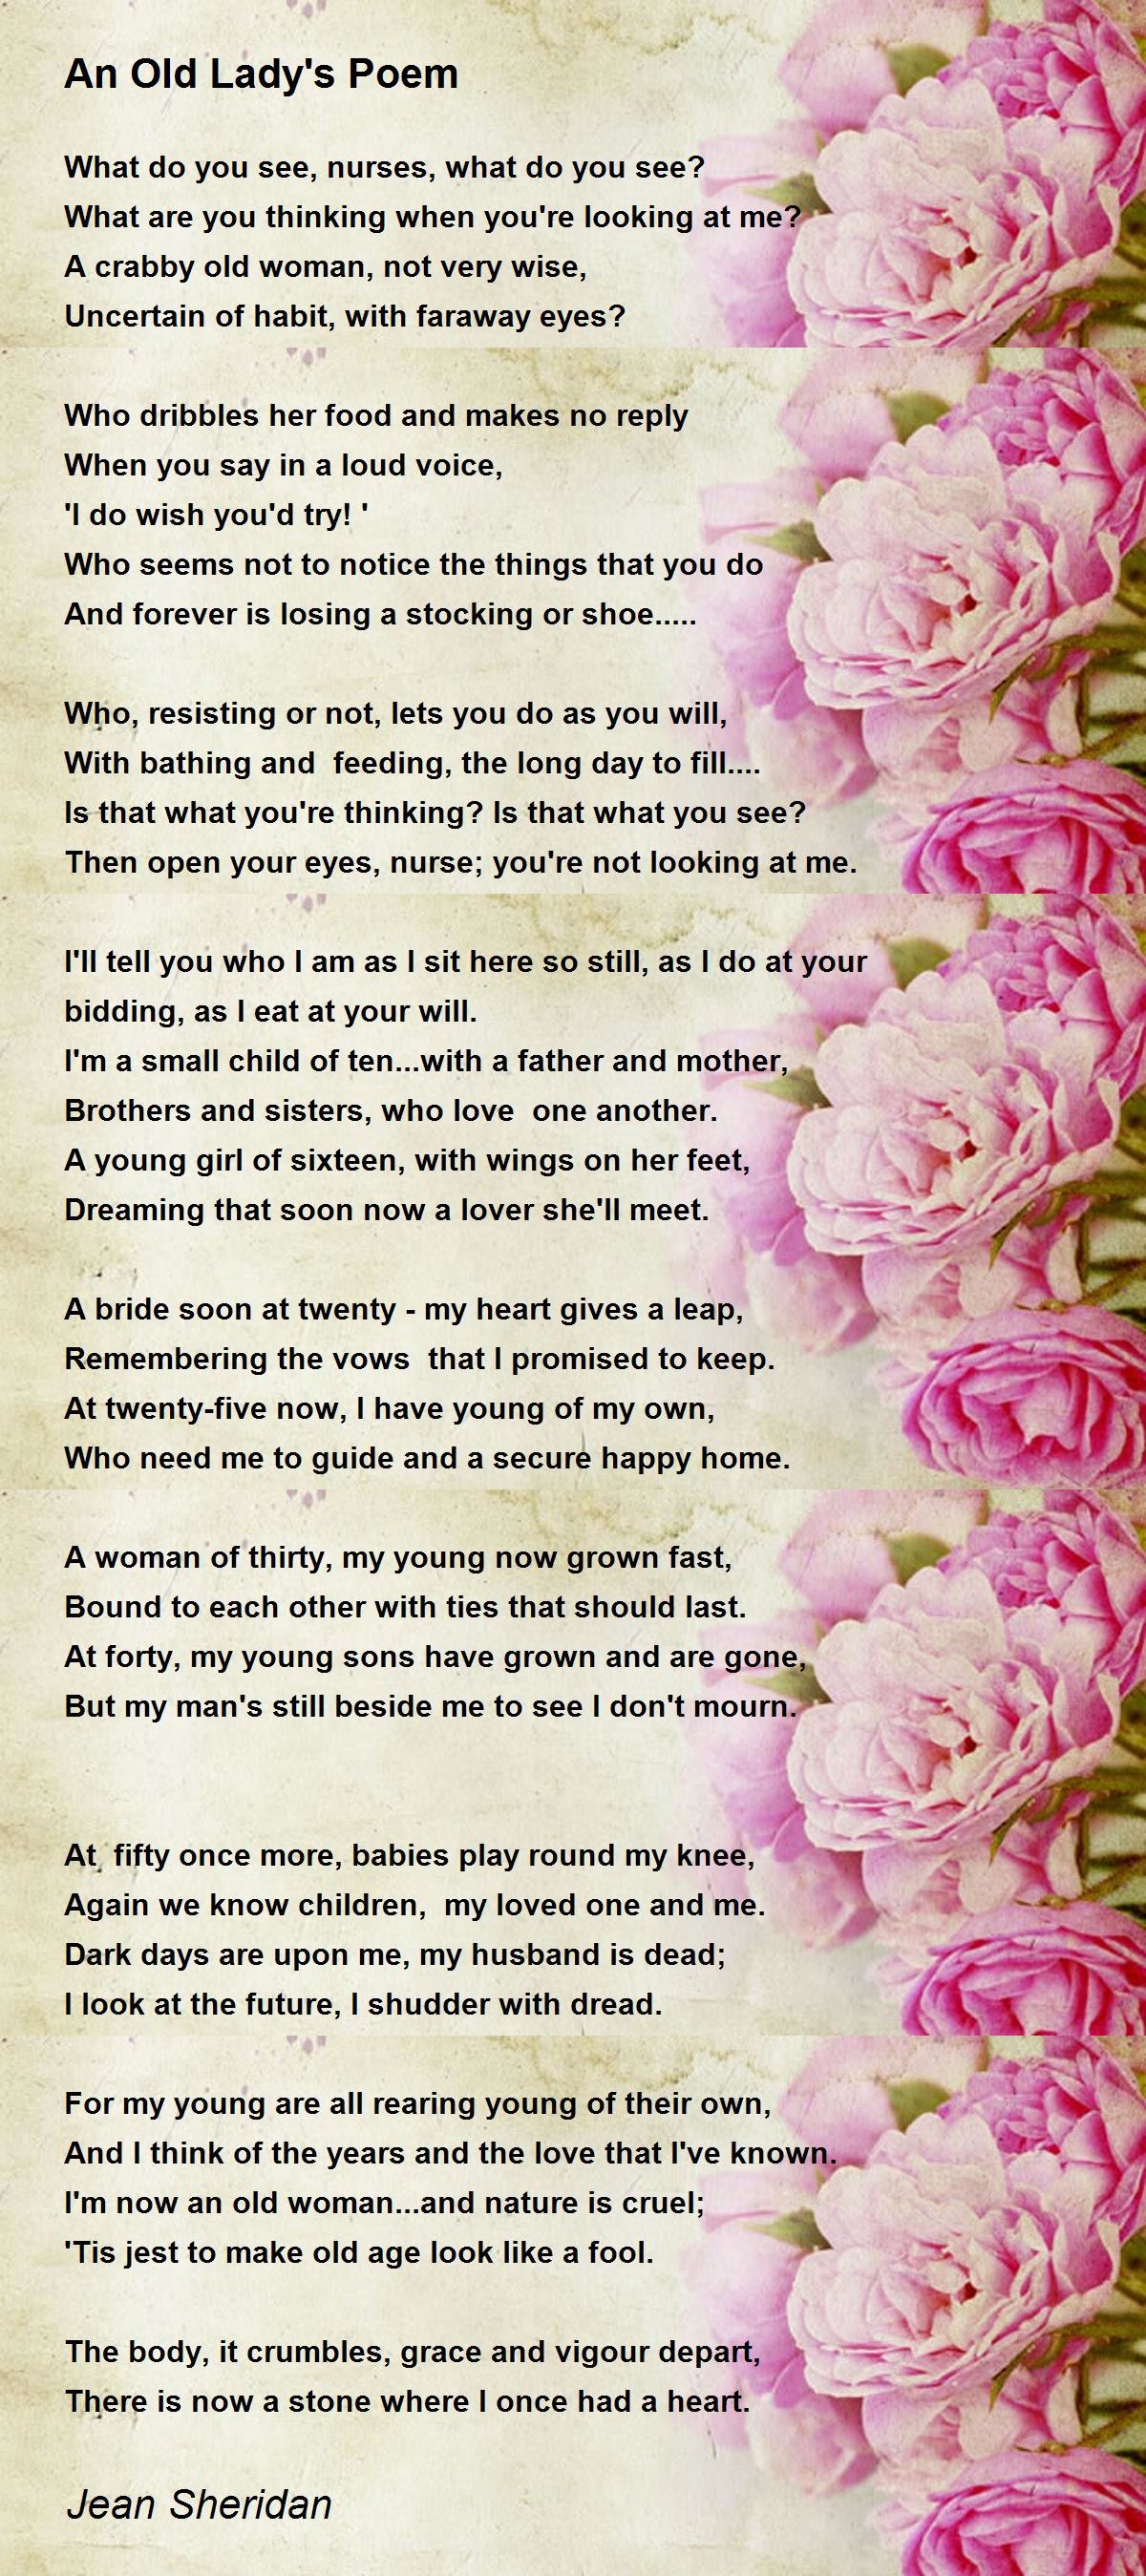 An Old Lady's Poem - An Old Lady's Poem Poem by Jean Sheridan